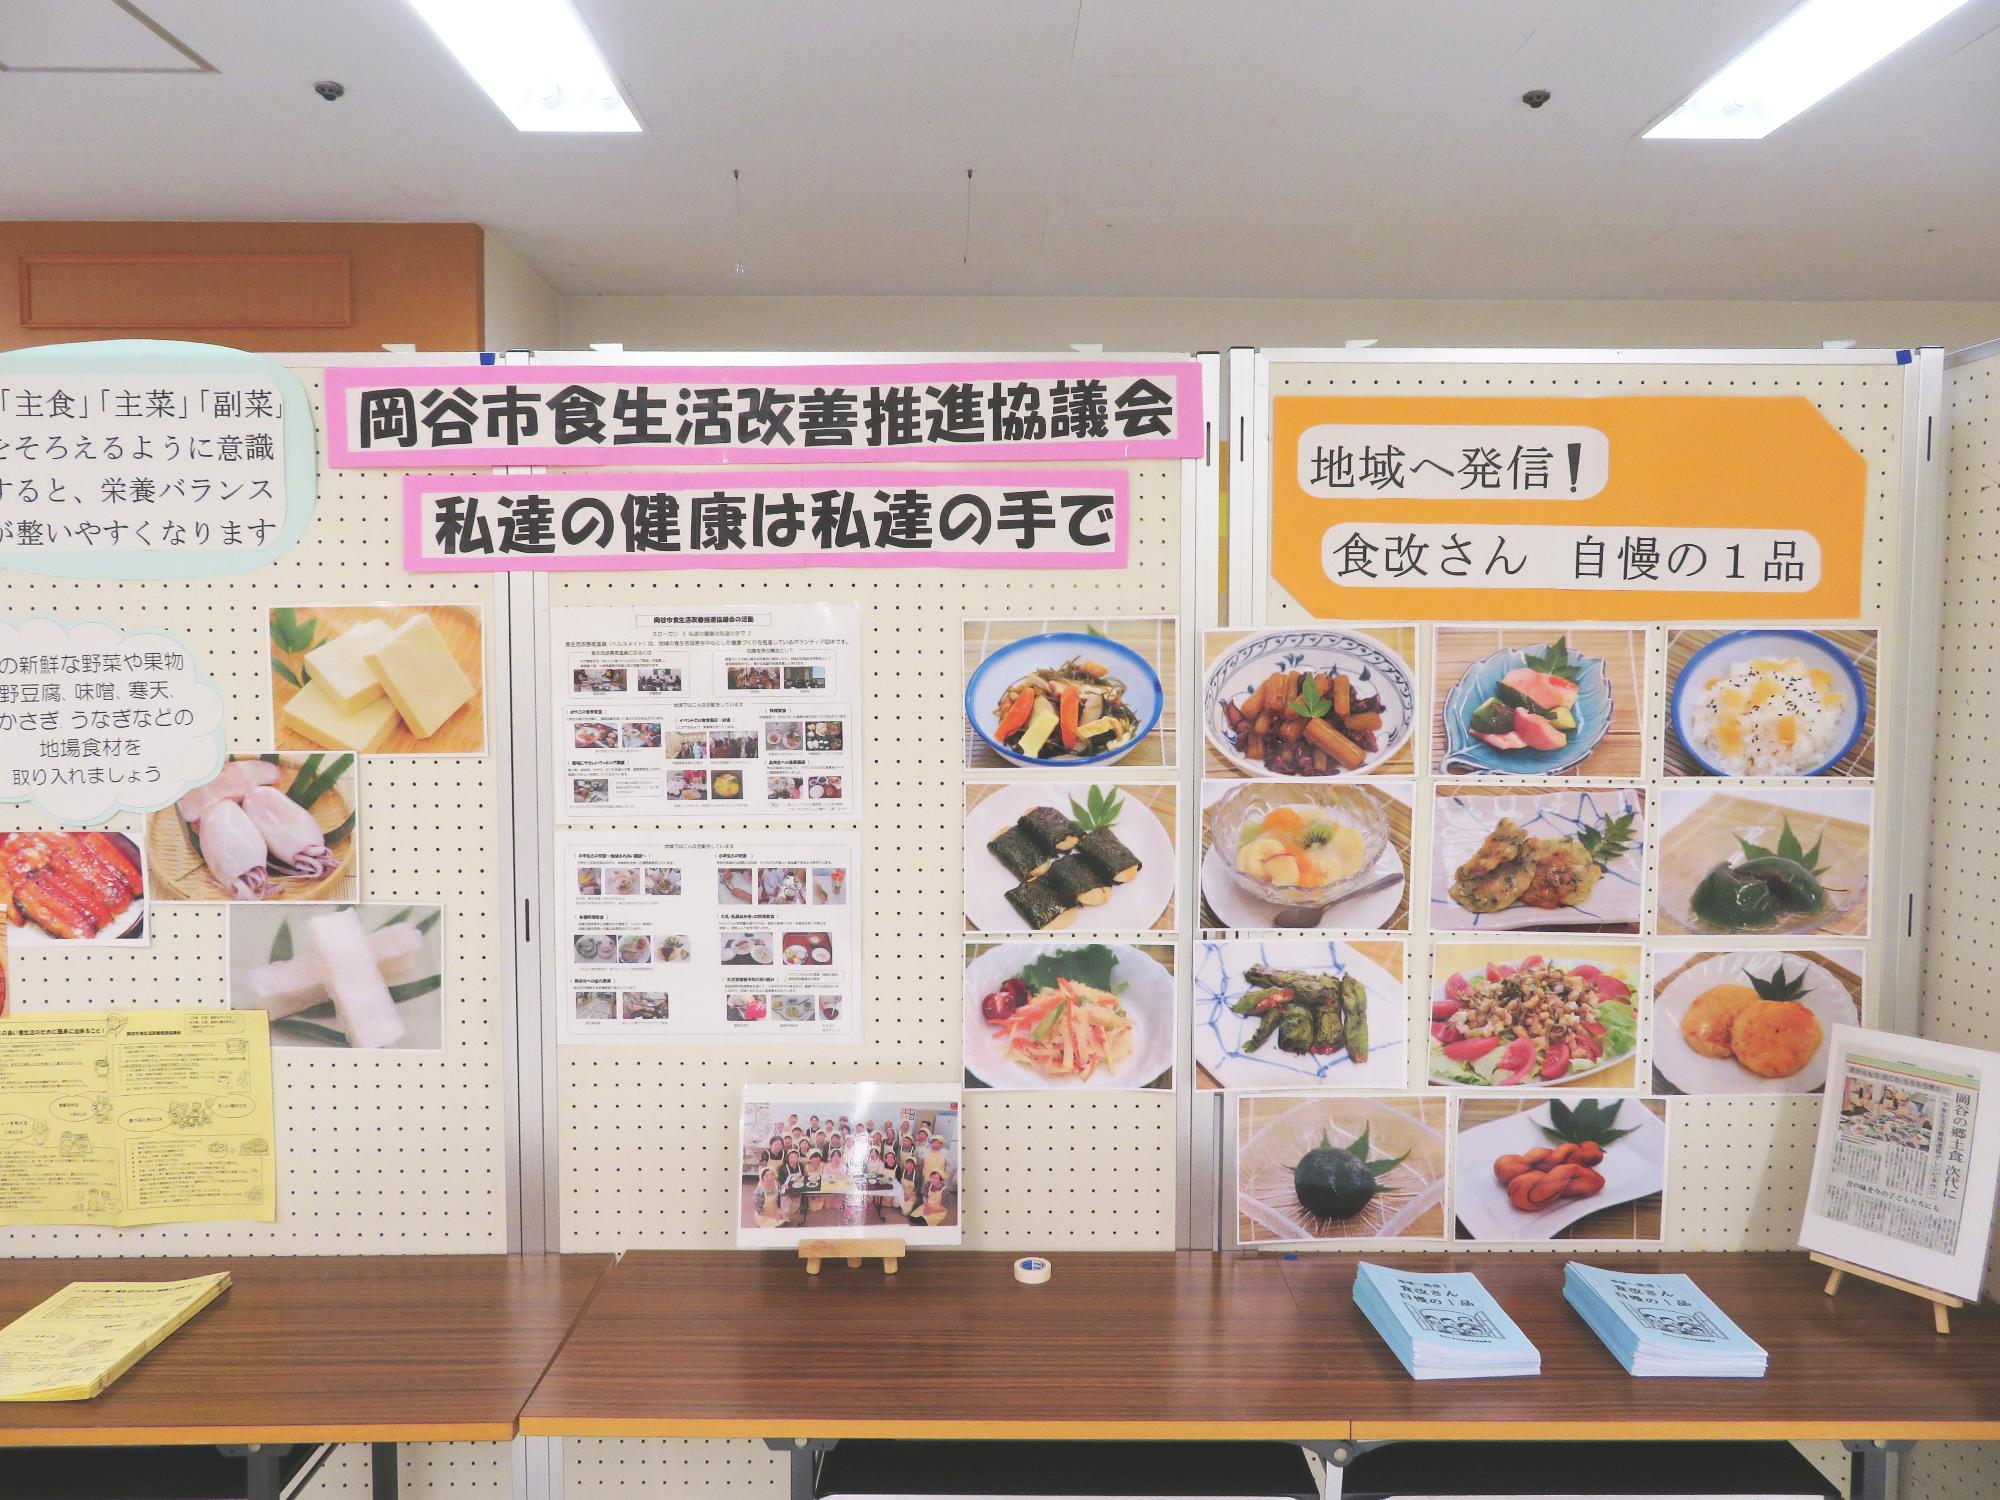 岡谷市食生活改善推進協議会が行ったイベント展示の様子